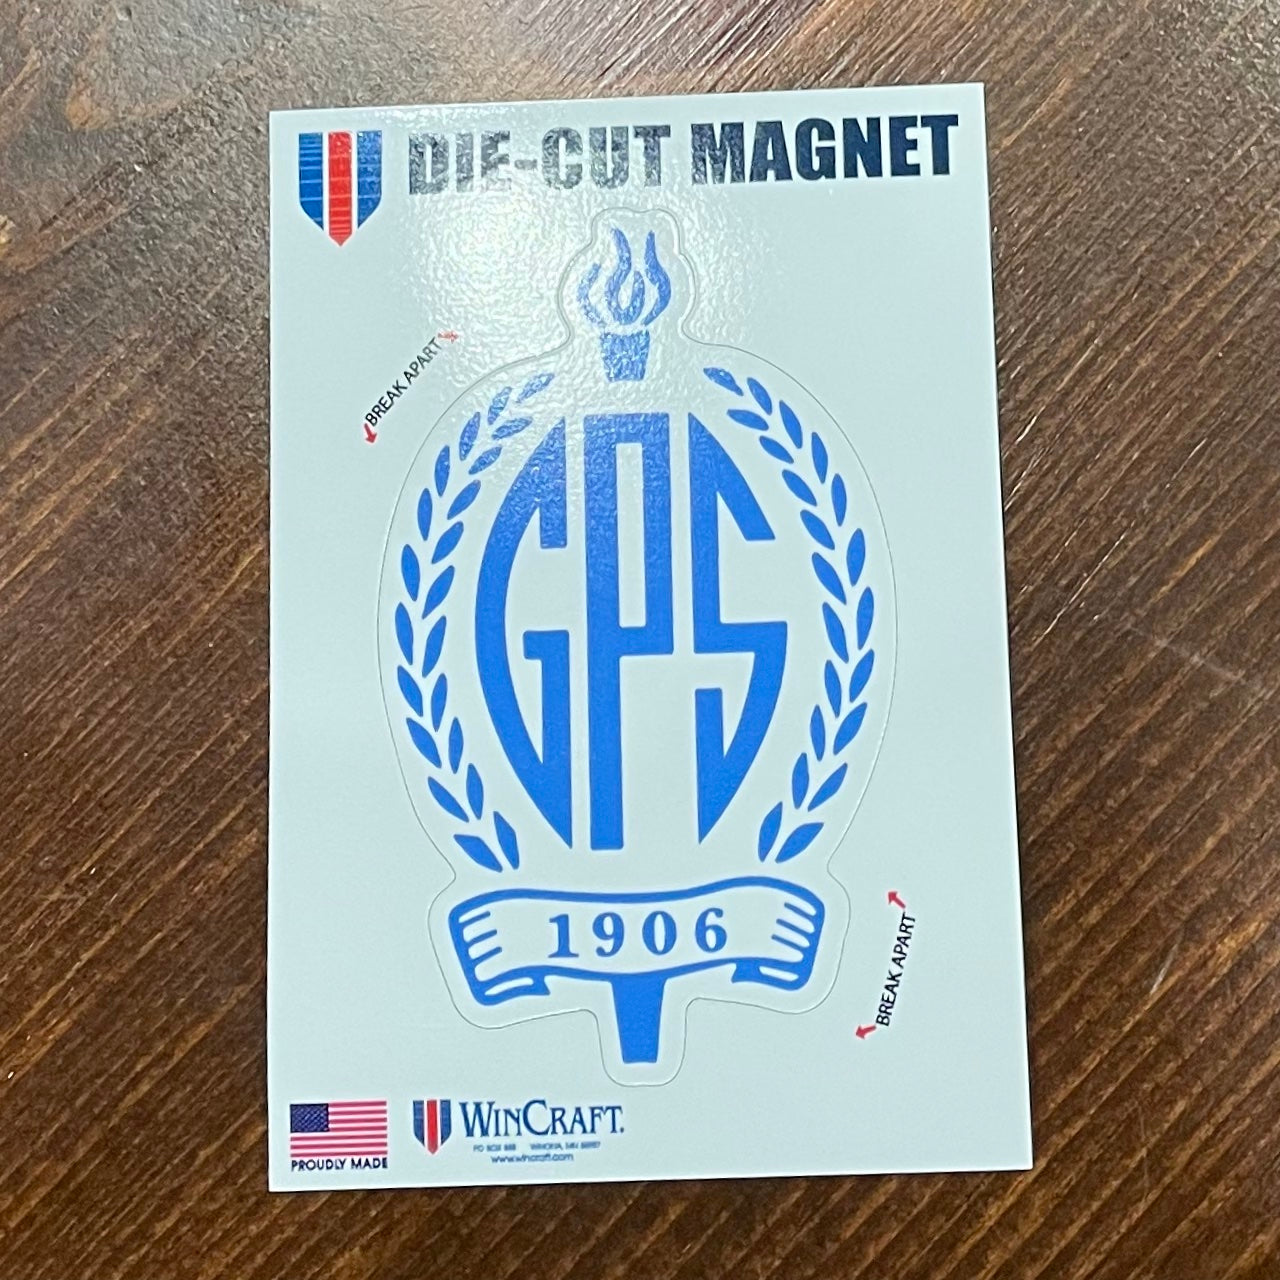 Magnet Crest Die-Cut